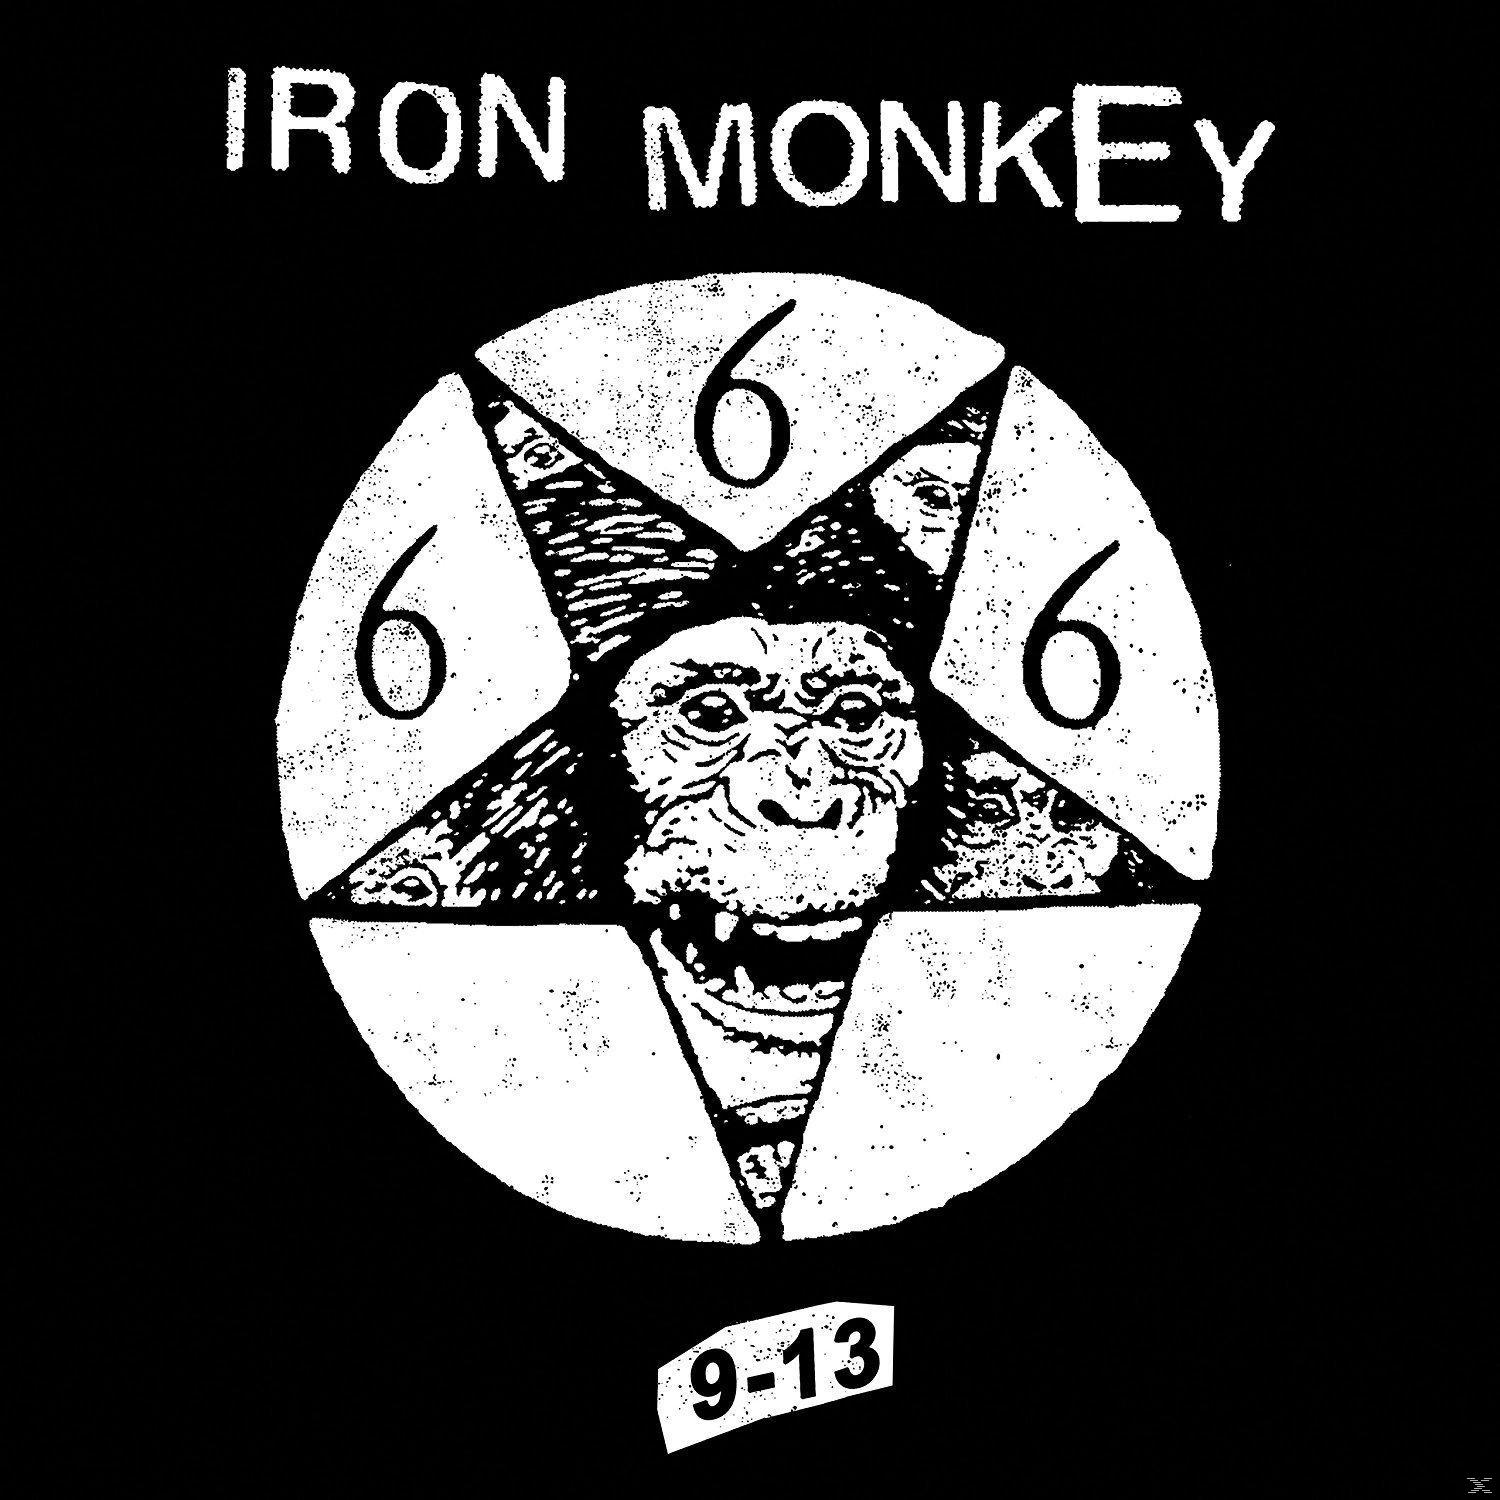 Iron Monkey - 9-13 (Black (Vinyl) - LP+MP3)